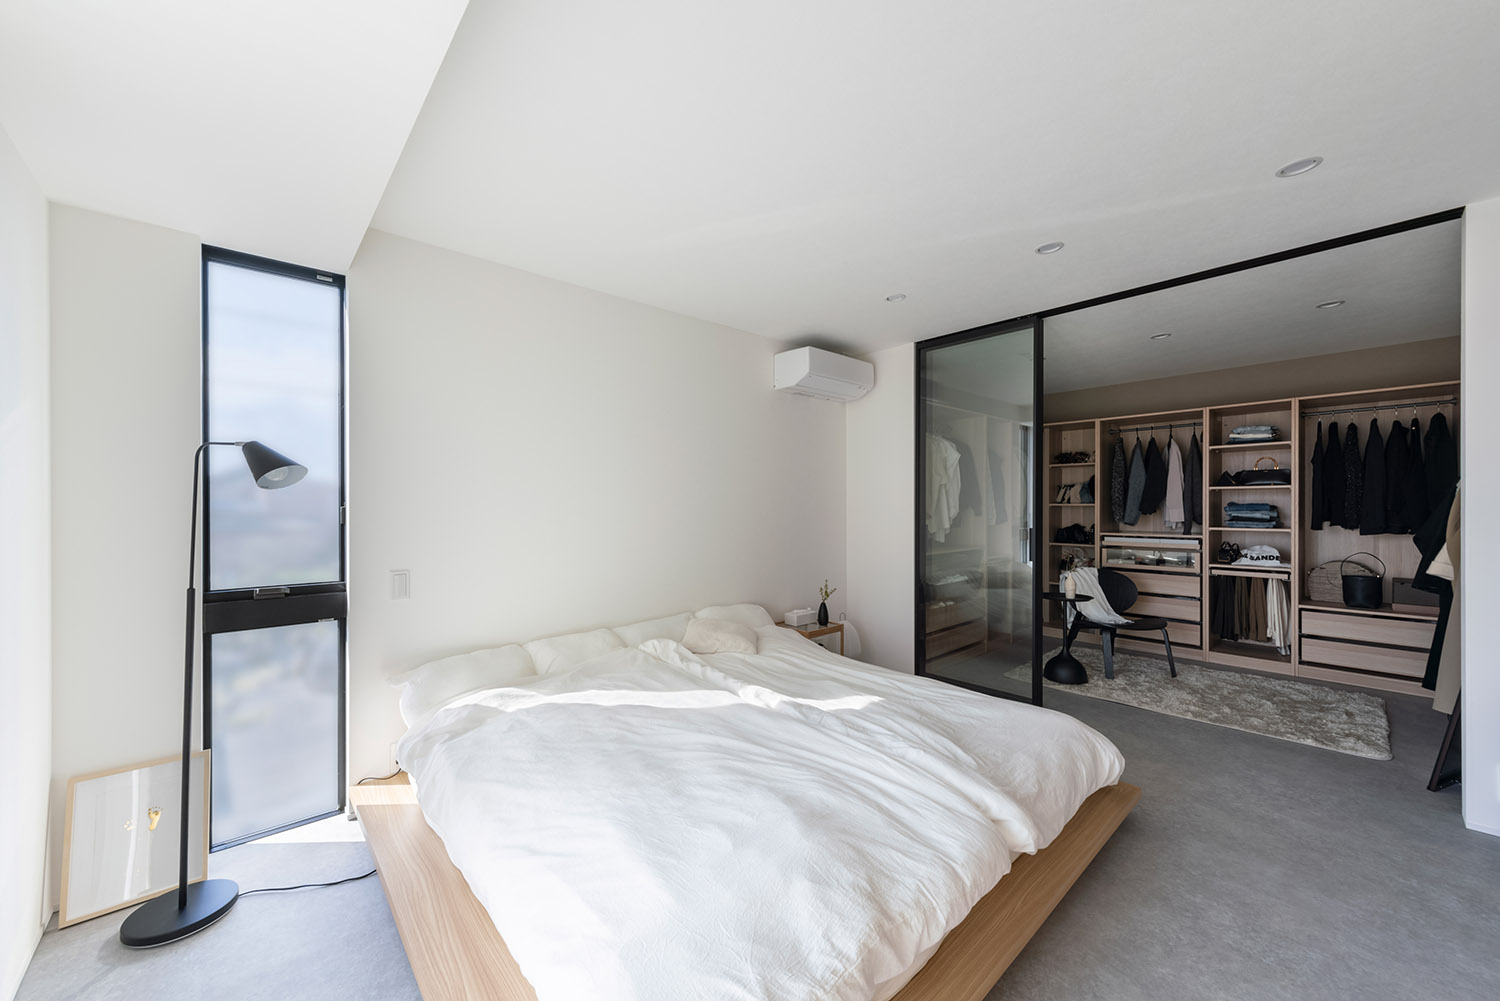 ガラス扉で仕切られたウォークインクローゼットがあるシンプルで広い寝室・デザイン住